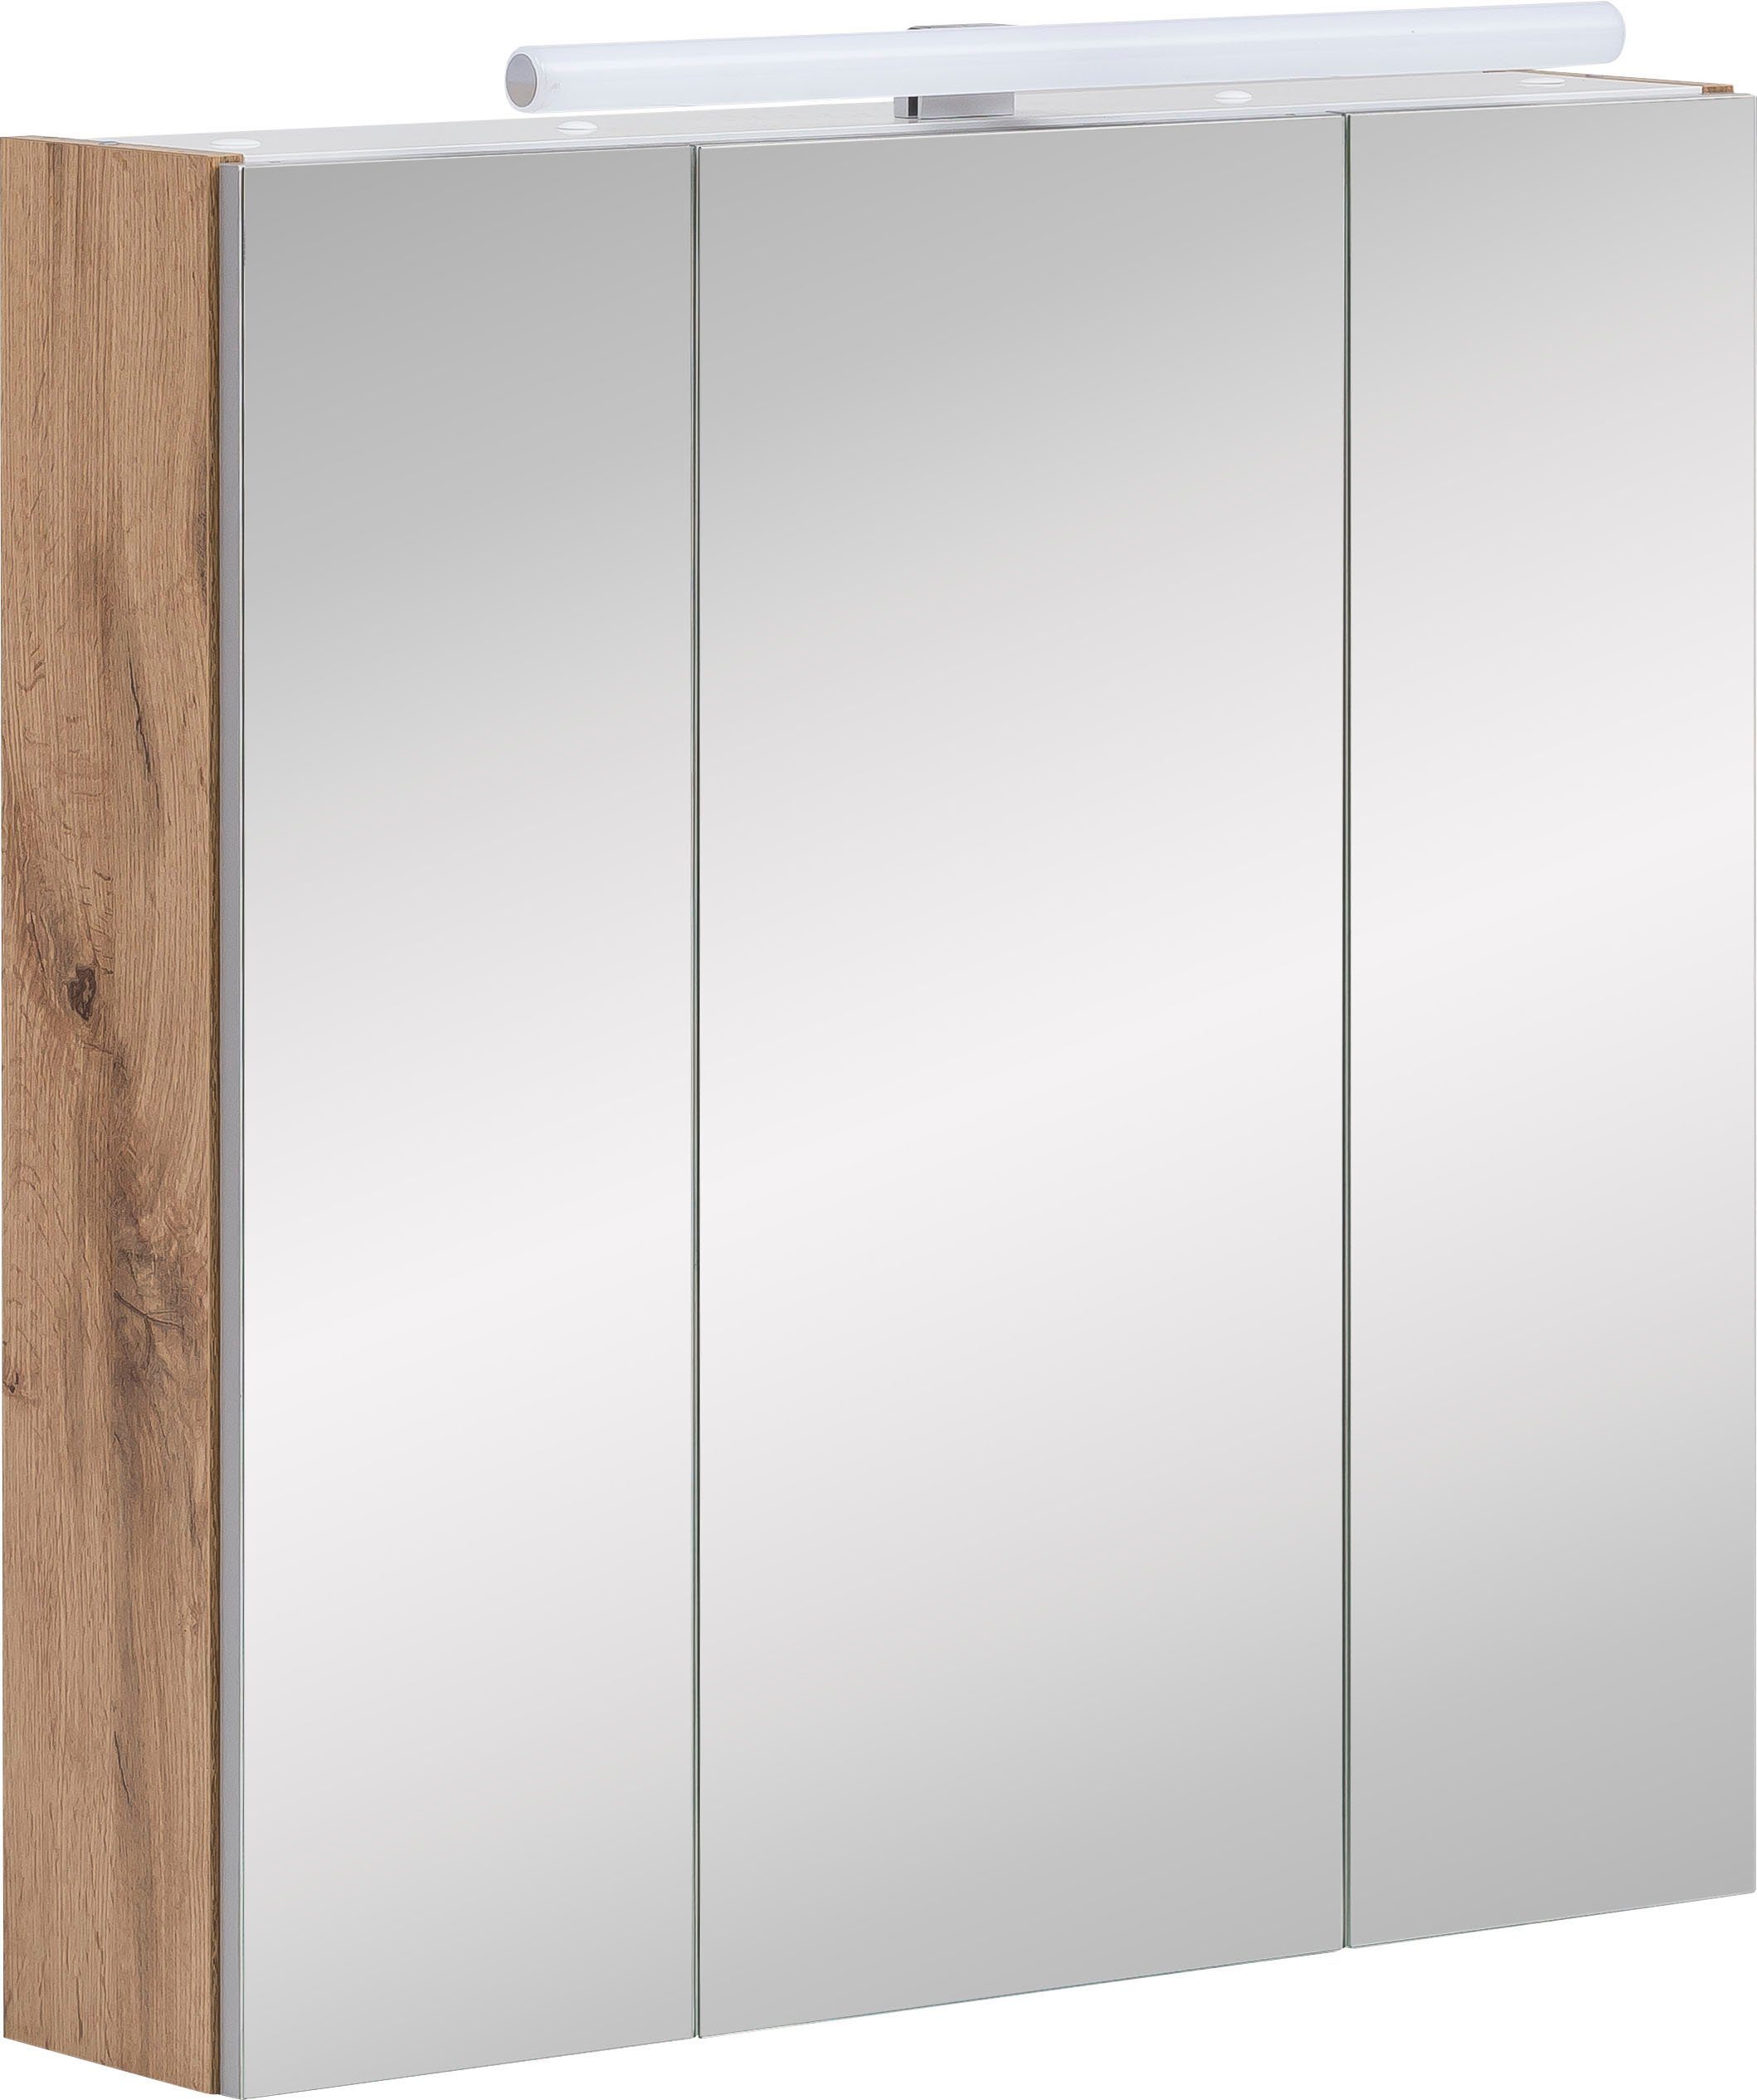 Schildmeyer Spiegelschrank Wido Breite 70 cm | Spiegelschränke